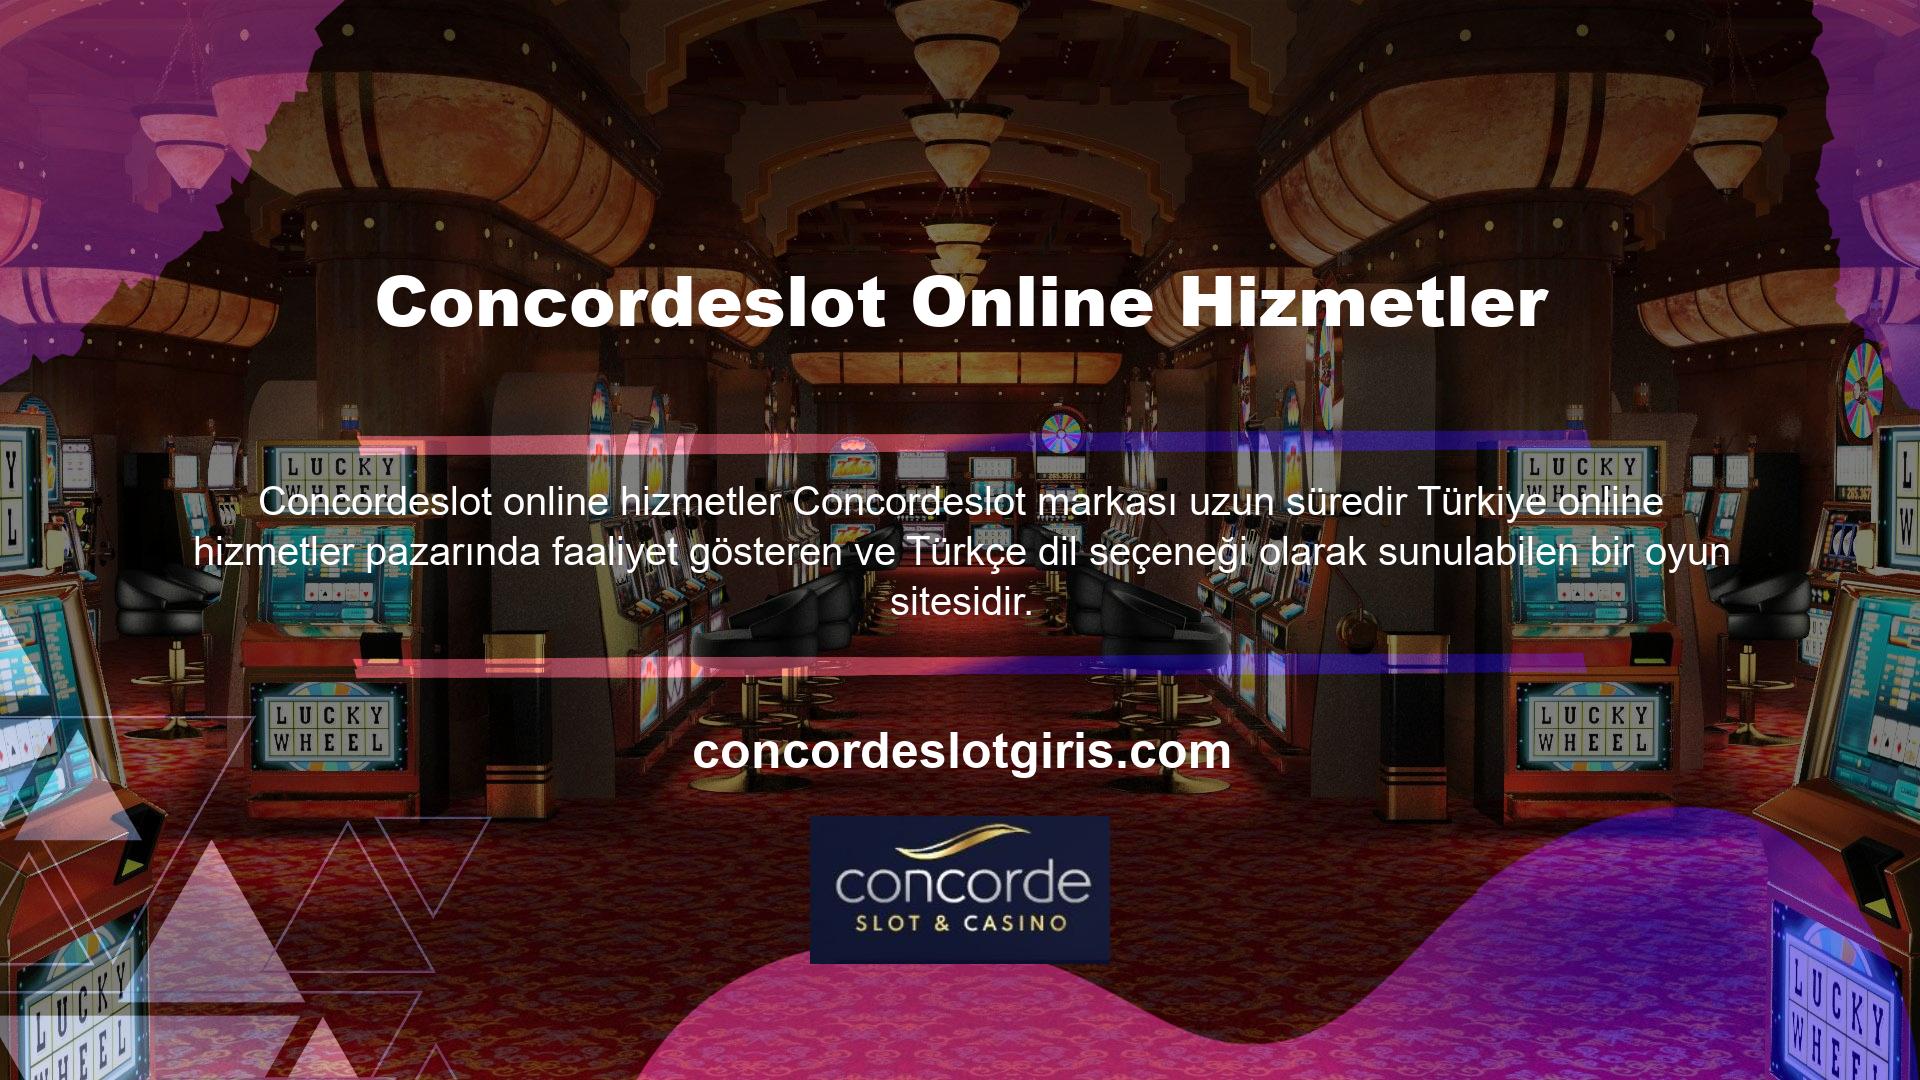 Yabancı casino web siteleri, Türk kanunları ve casino grubunun sağladığı hizmetlerin niteliği nedeniyle yabancı web siteleri olarak adlandırılmaktadır